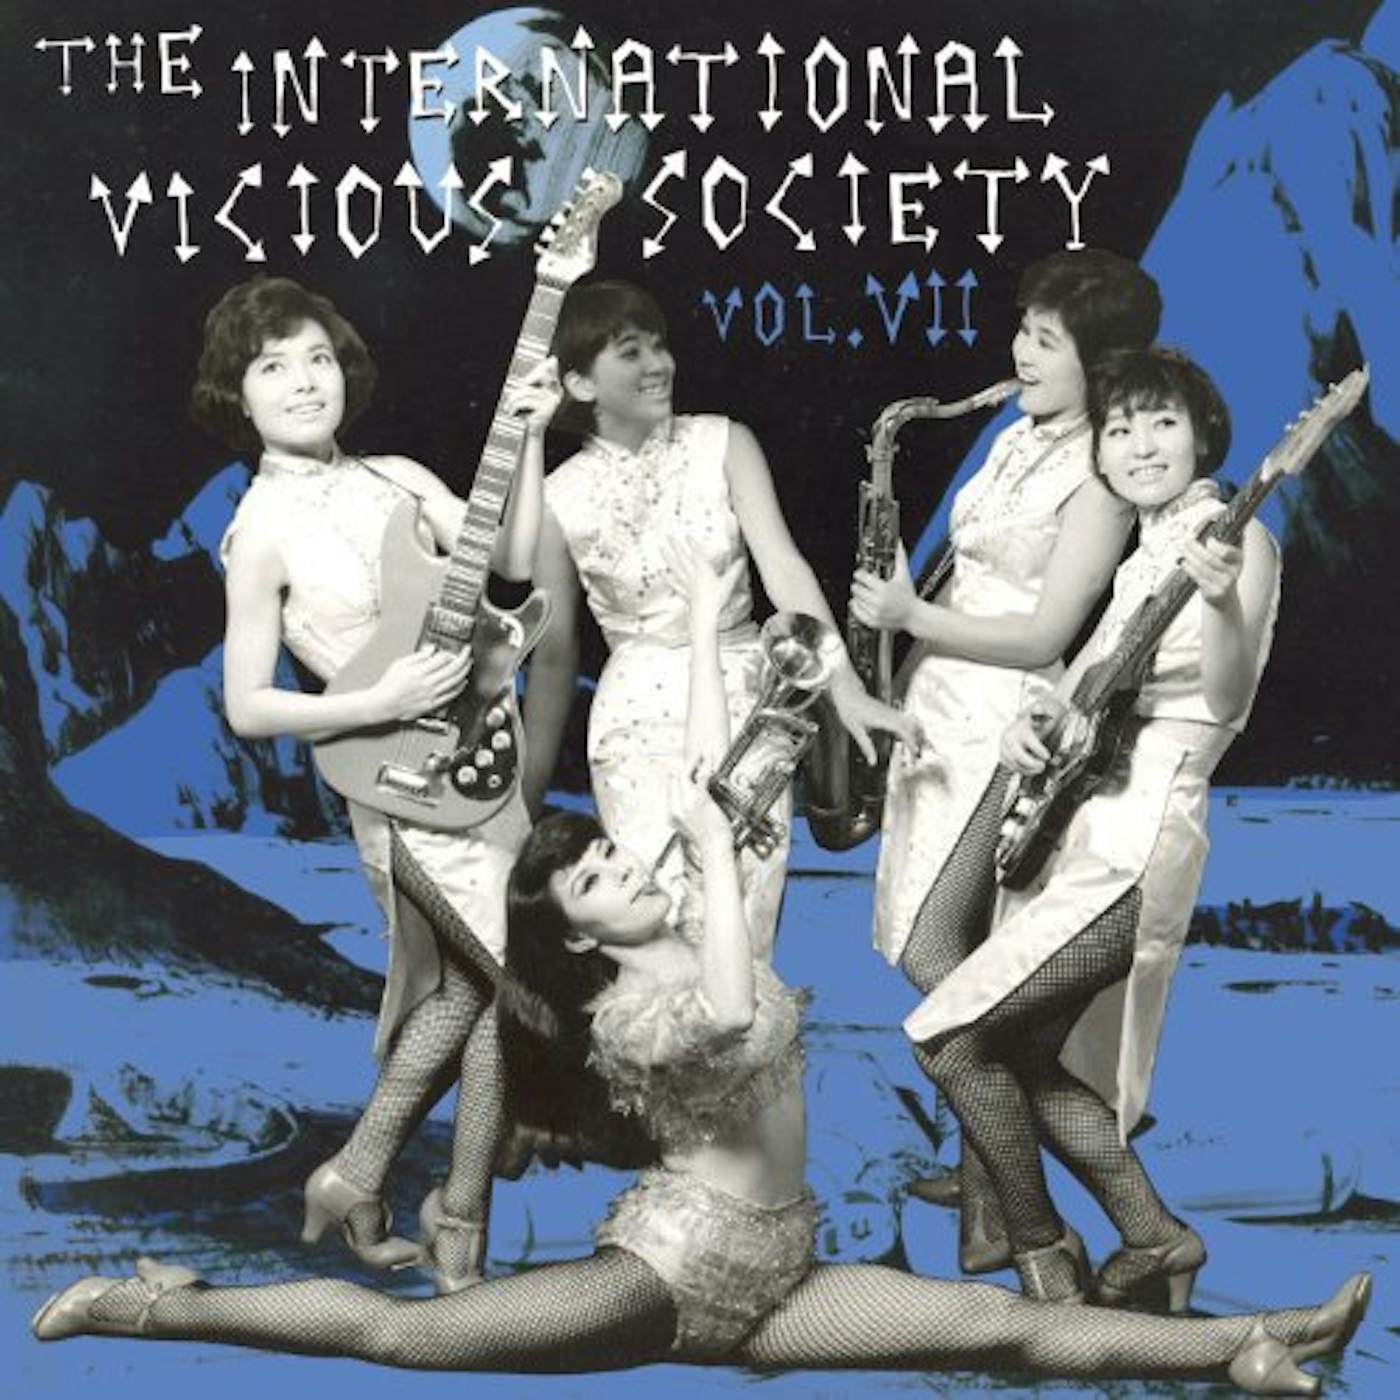 International Vicious Society / Various INTERNATIONAL VICIOUS SOCIETY VOL 2 / VARIOUS Vinyl Record